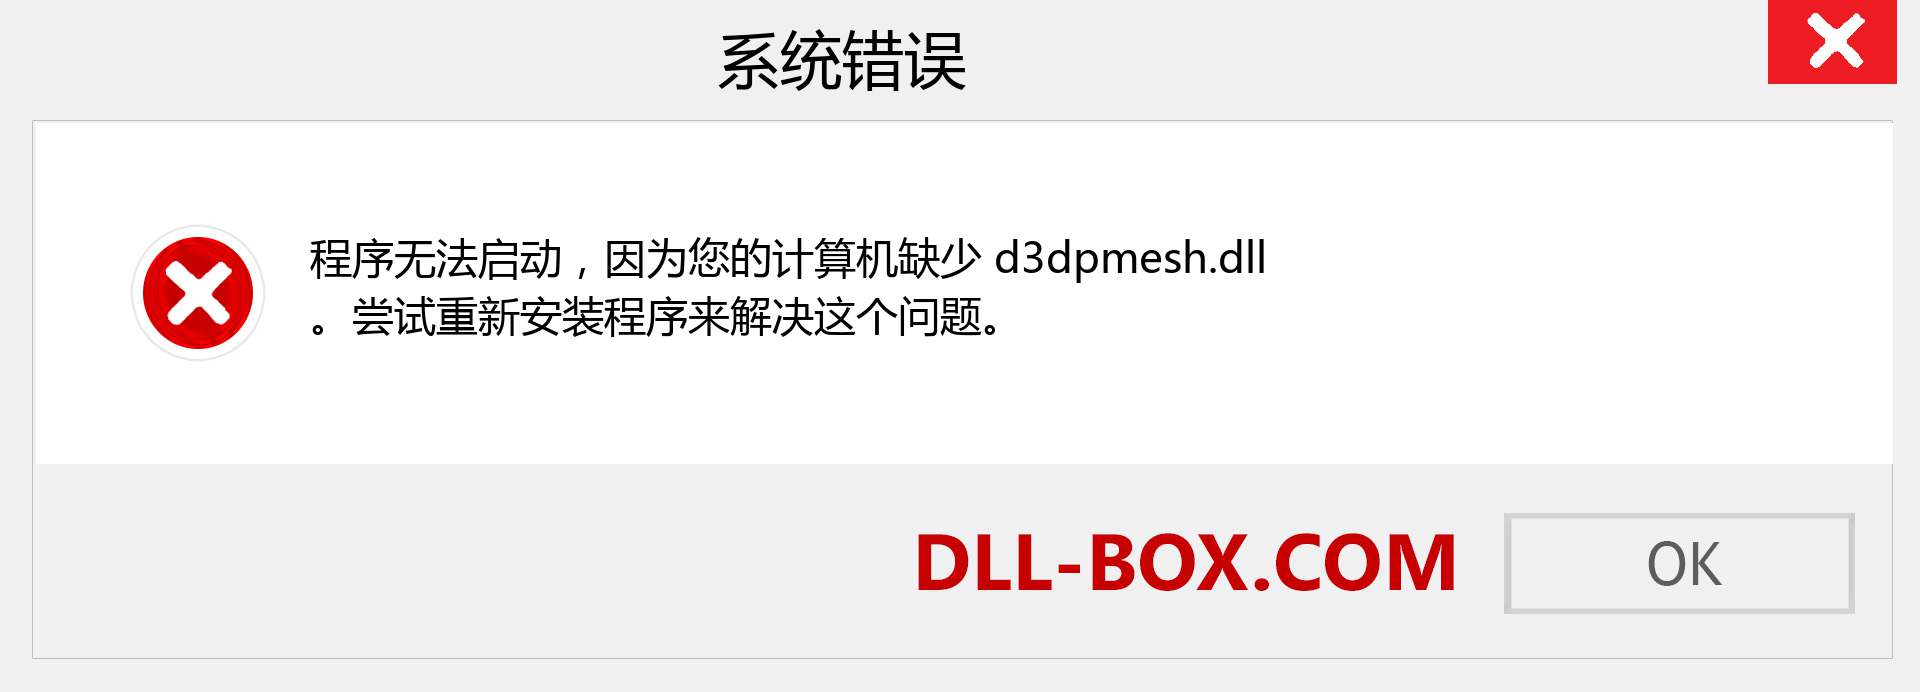 d3dpmesh.dll 文件丢失？。 适用于 Windows 7、8、10 的下载 - 修复 Windows、照片、图像上的 d3dpmesh dll 丢失错误